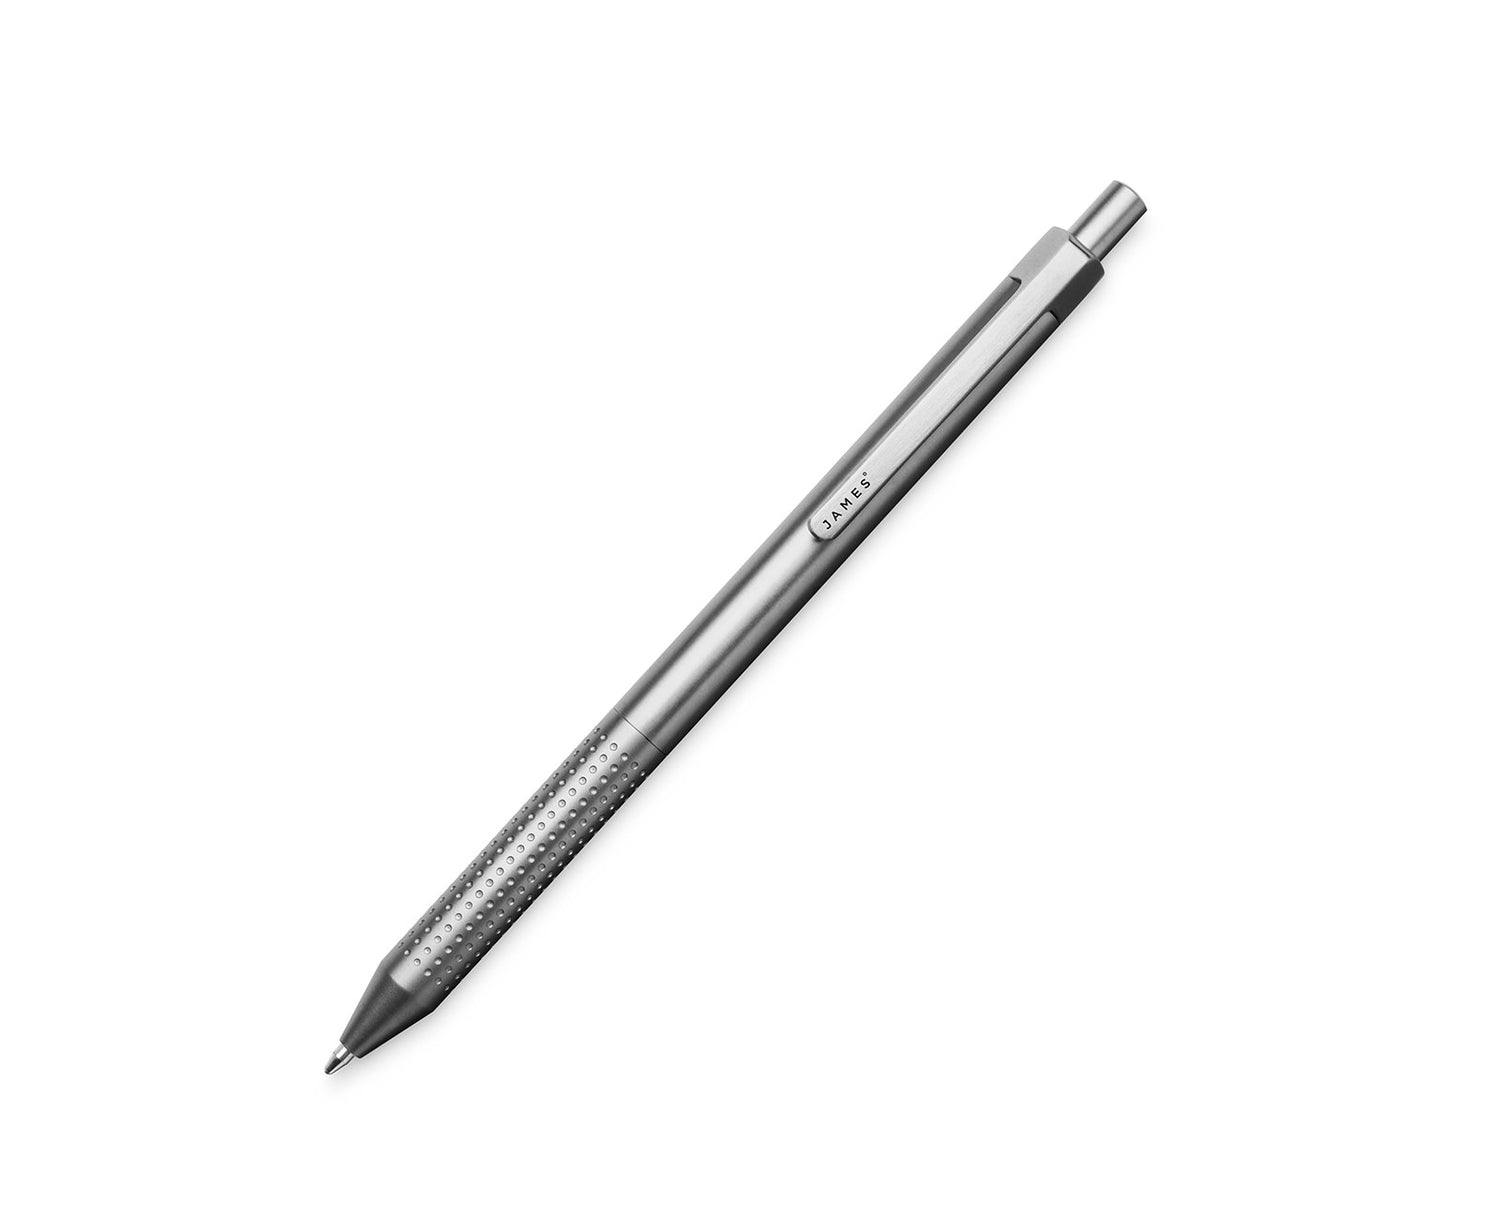 The titanium Burwell pen.